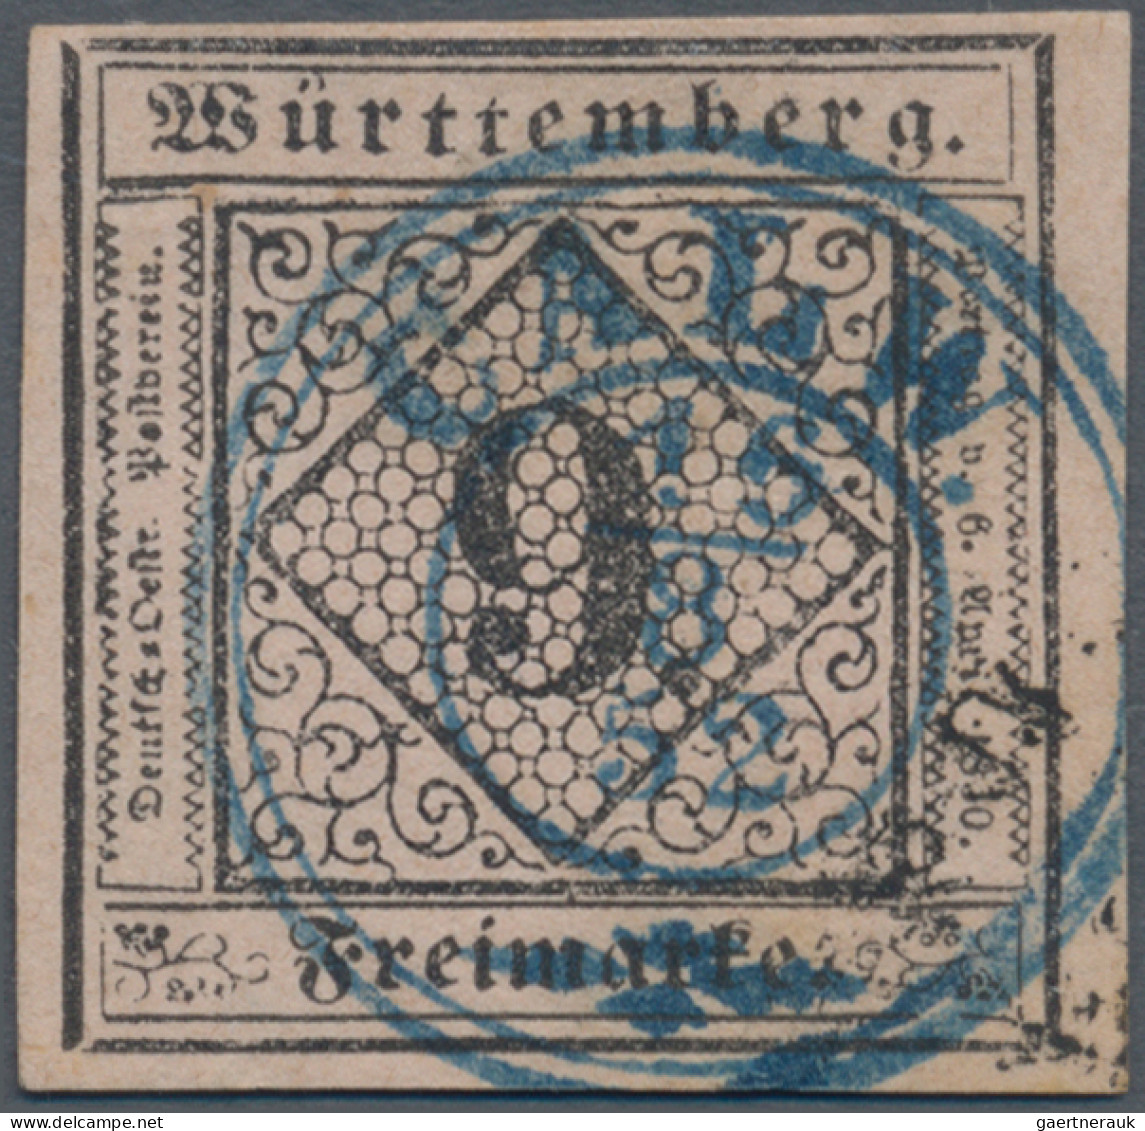 Württemberg - Marken und Briefe: 1851, 3 Kr. schwarz auf dunkelgelb, zwei Exempl